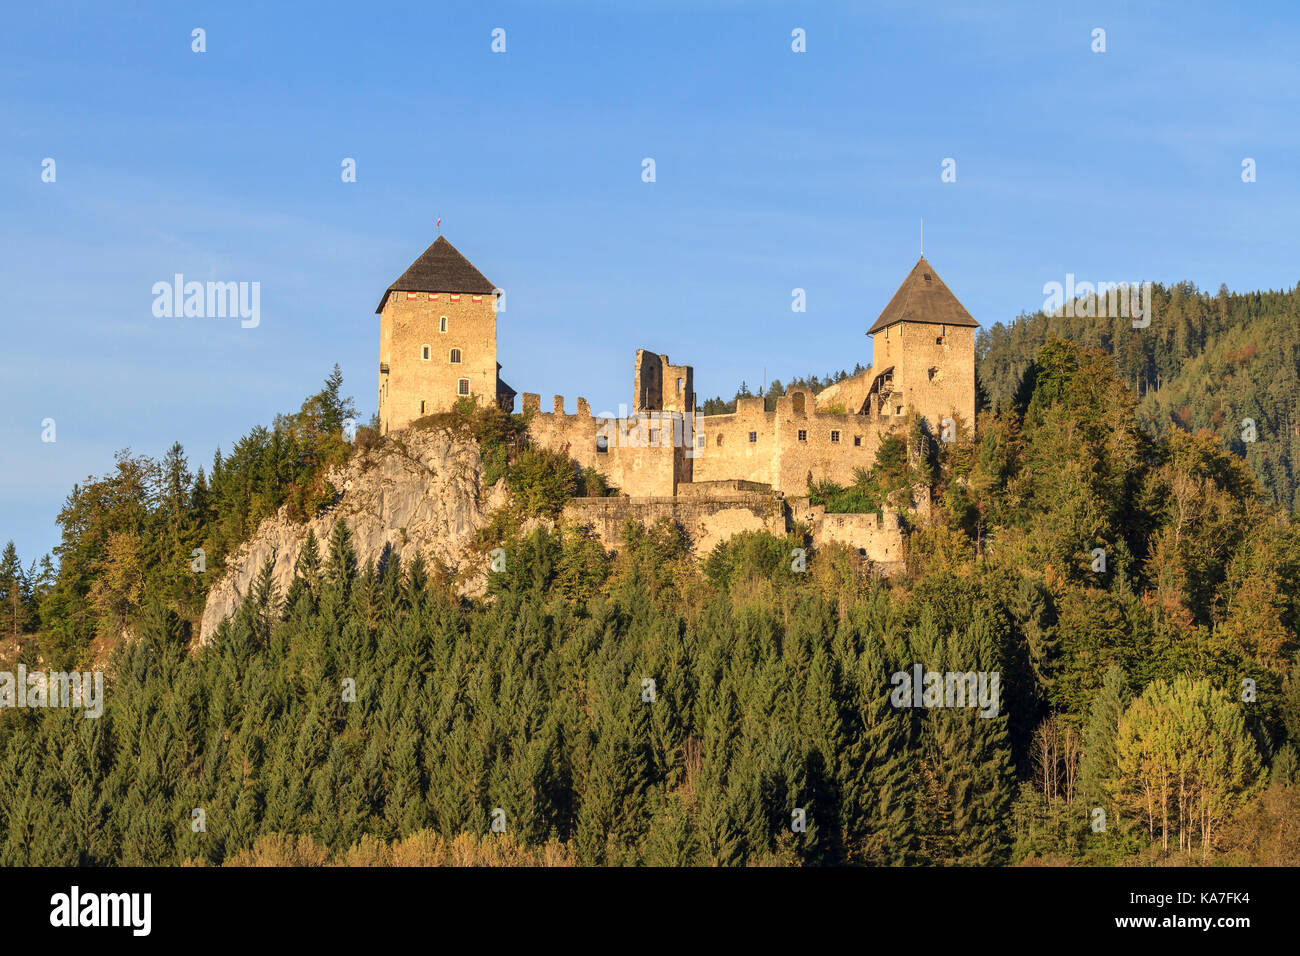 Ruined castle Gallenstein, St. Gallen, Styria, Austria Stock Photo